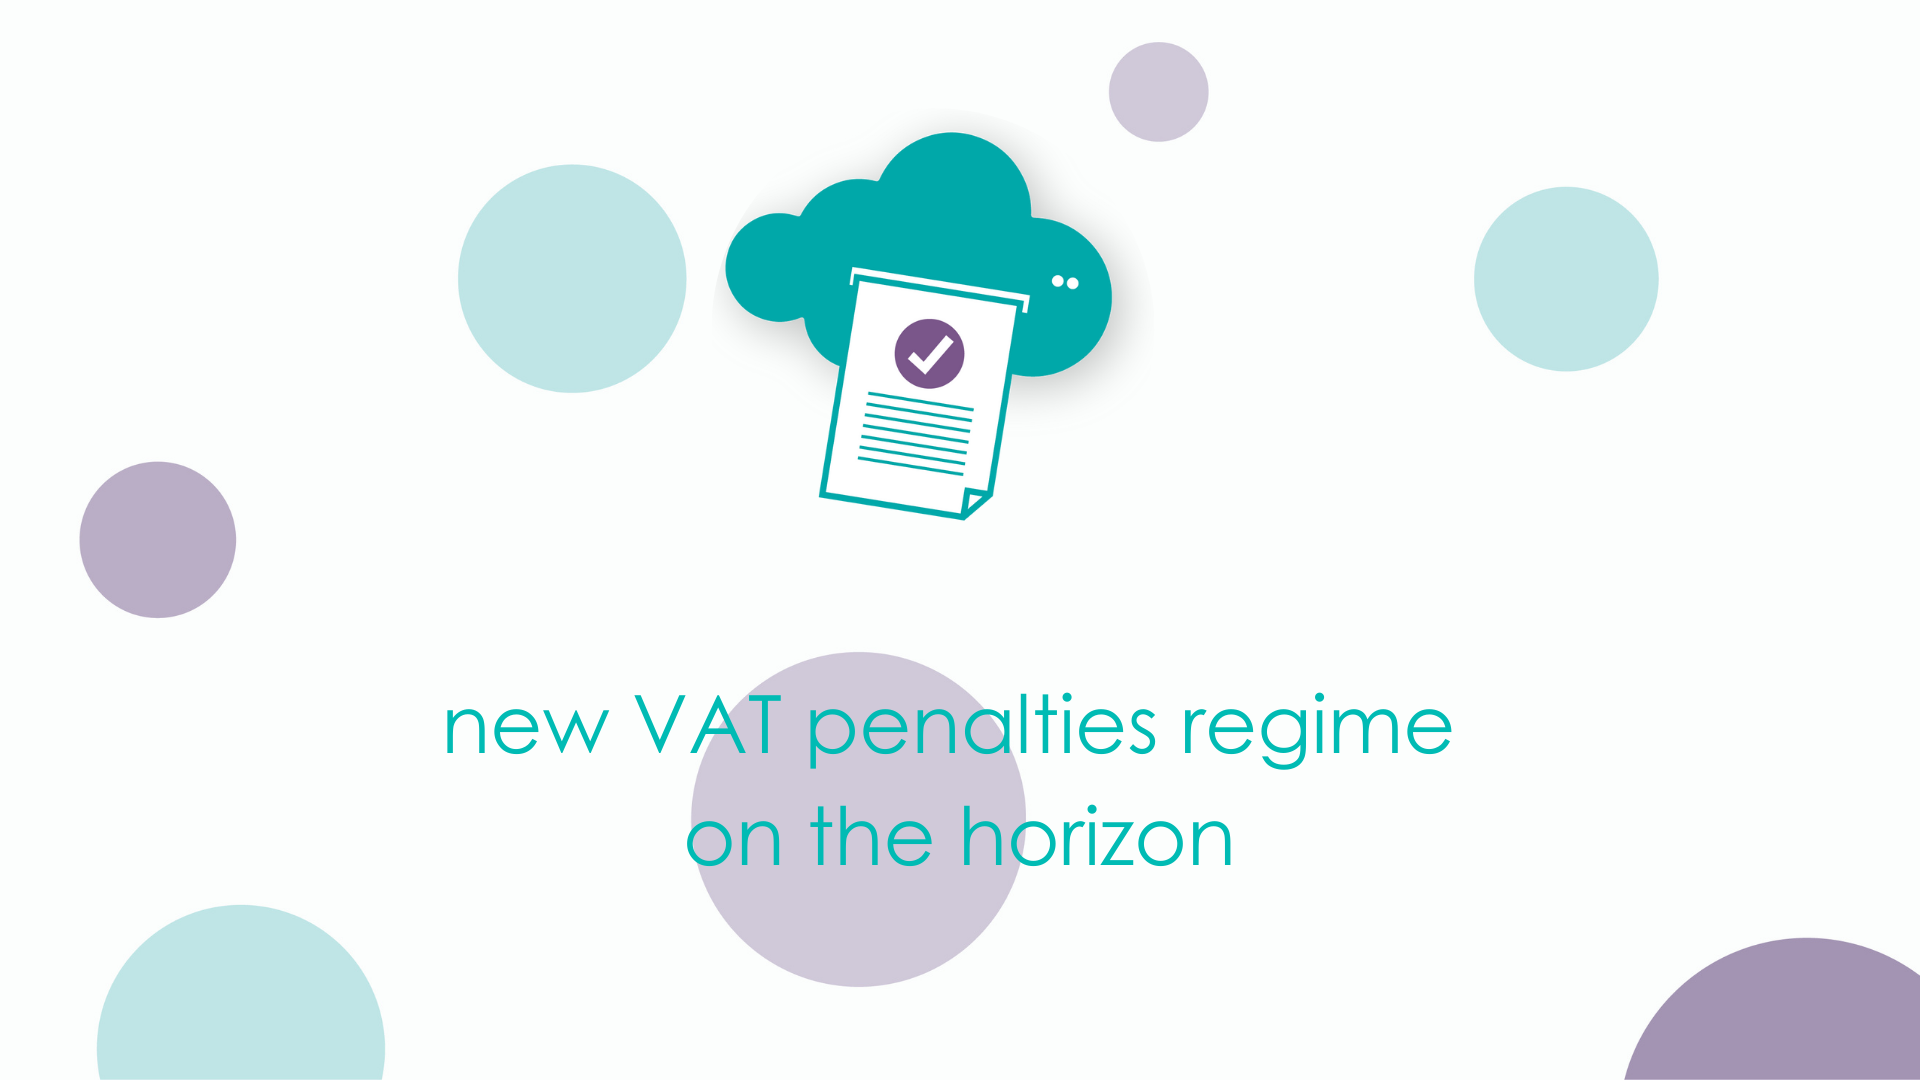 New VAT penalties regime on the horizon